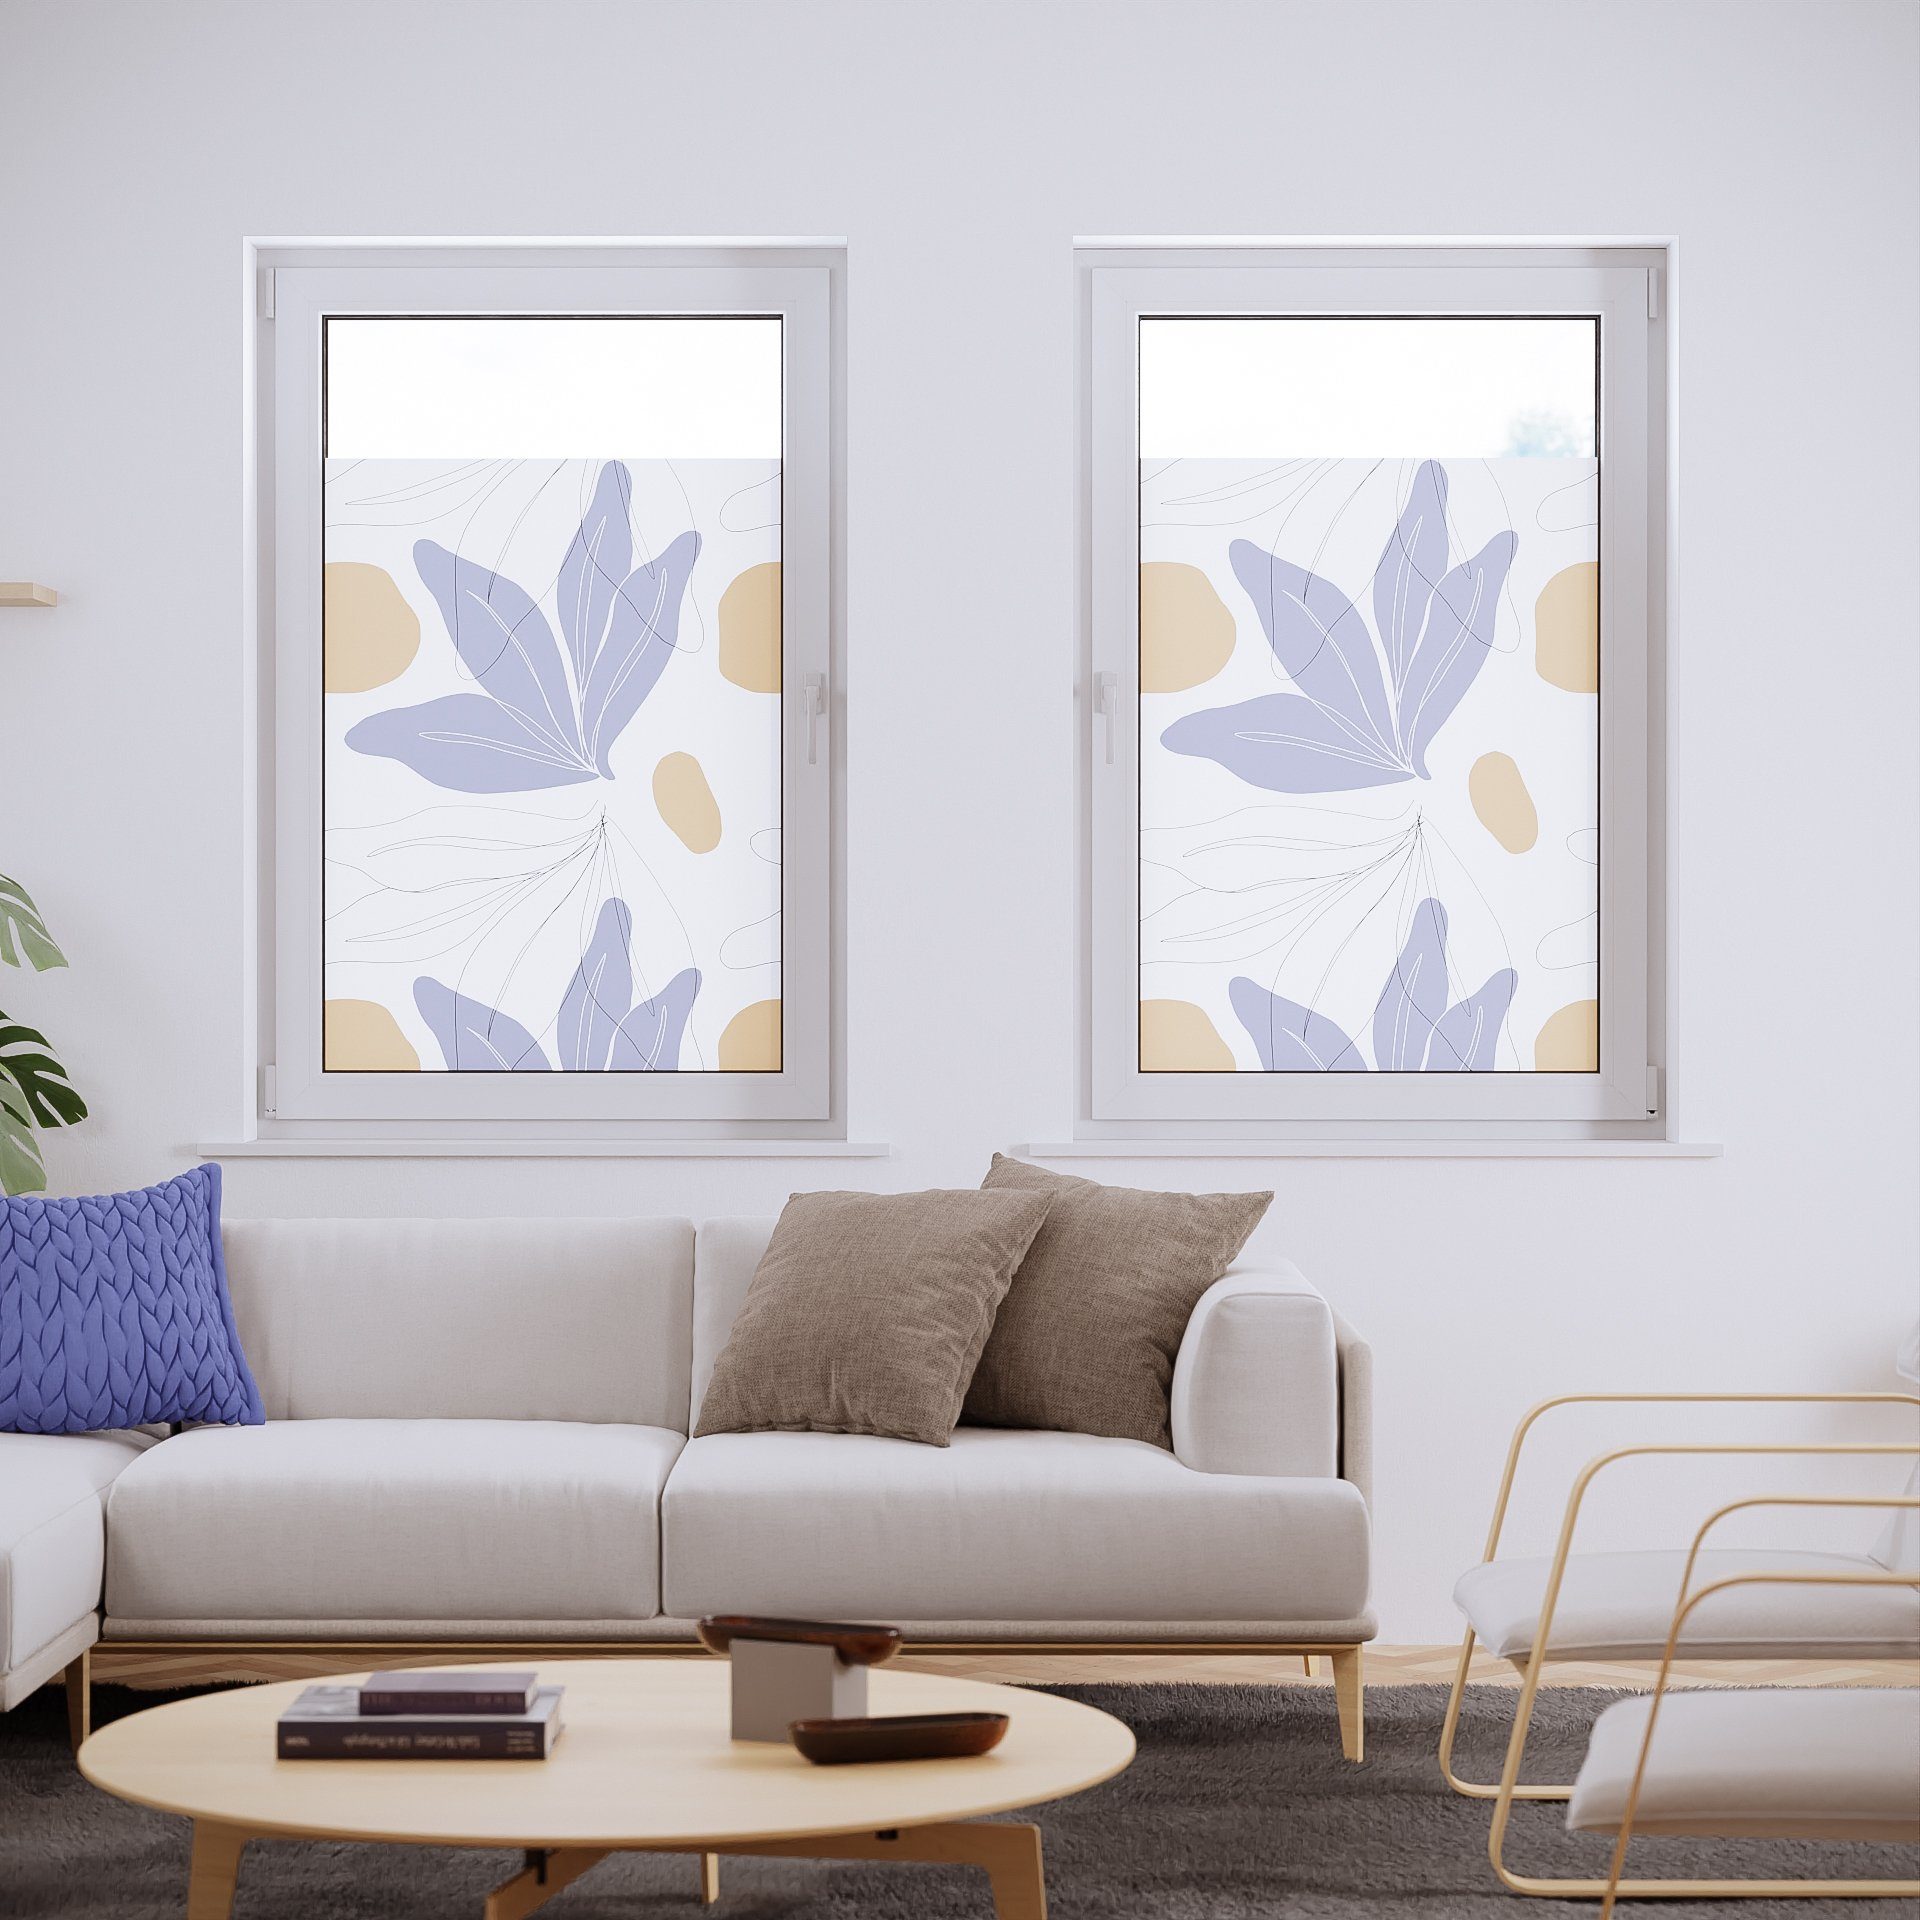 Lichtblick Fensterfolie selbstklebend, Sichtschutz, My Bohemian Garden -  Bunt online kaufen bei Netto